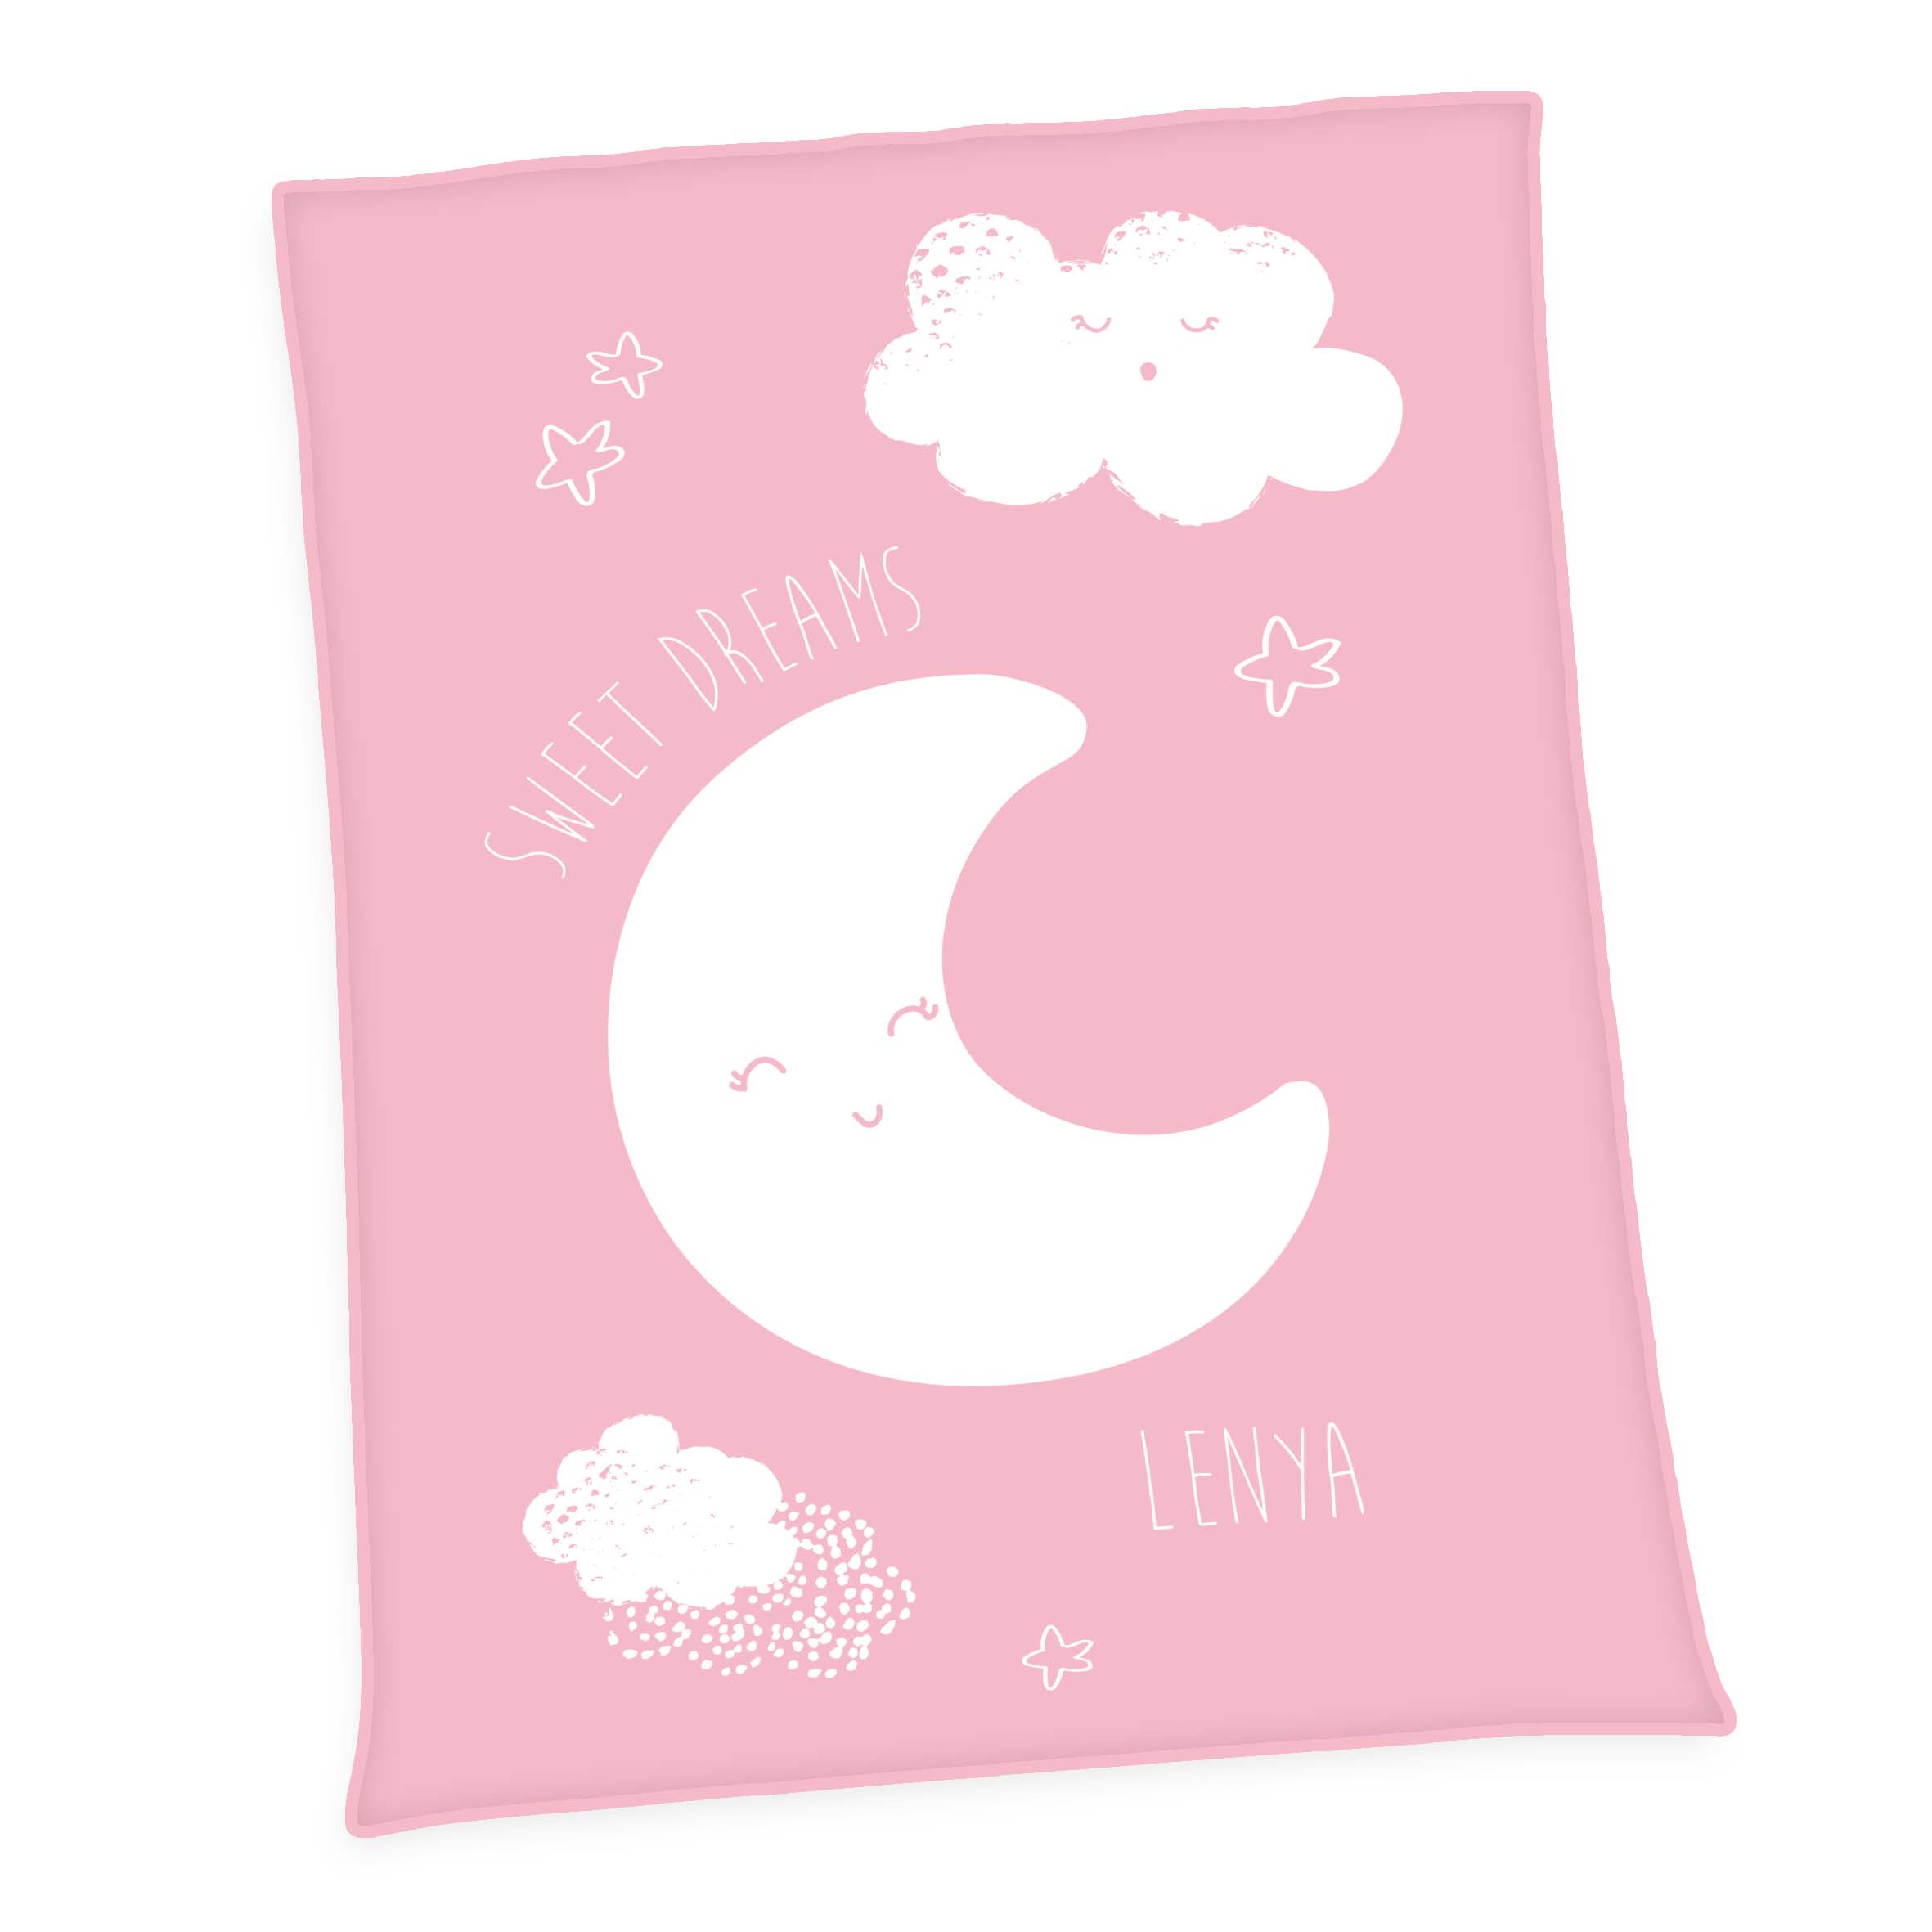 Produktbild Personalisierte Baby Kuscheldecke Mond Unicade Rosa